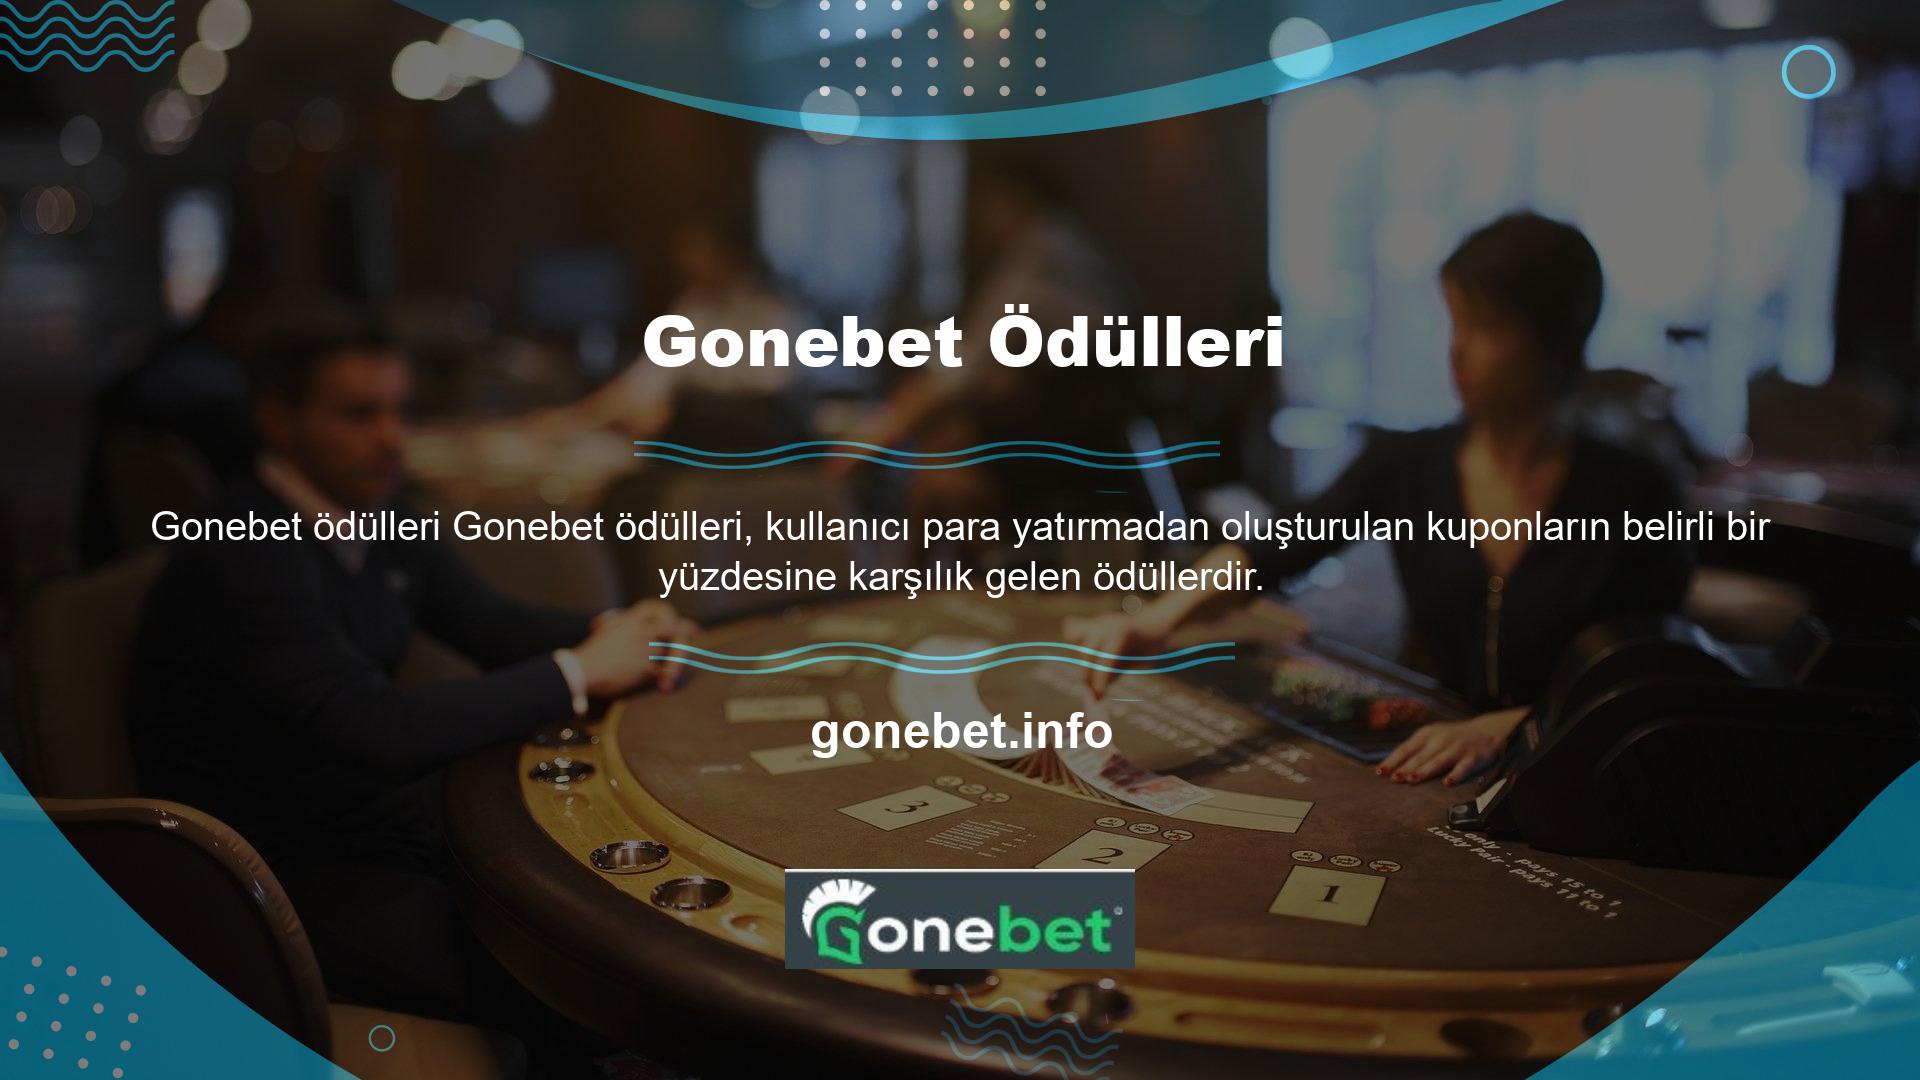 Farklı sitelerin farklı bonus kuralları olmasına rağmen, Gonebet Bonus, kullanıcıların siteyi denemeleri ve üyeliklerini sürdürmeleri için oldukça uygun bir mekanizma oluşturmaktadır